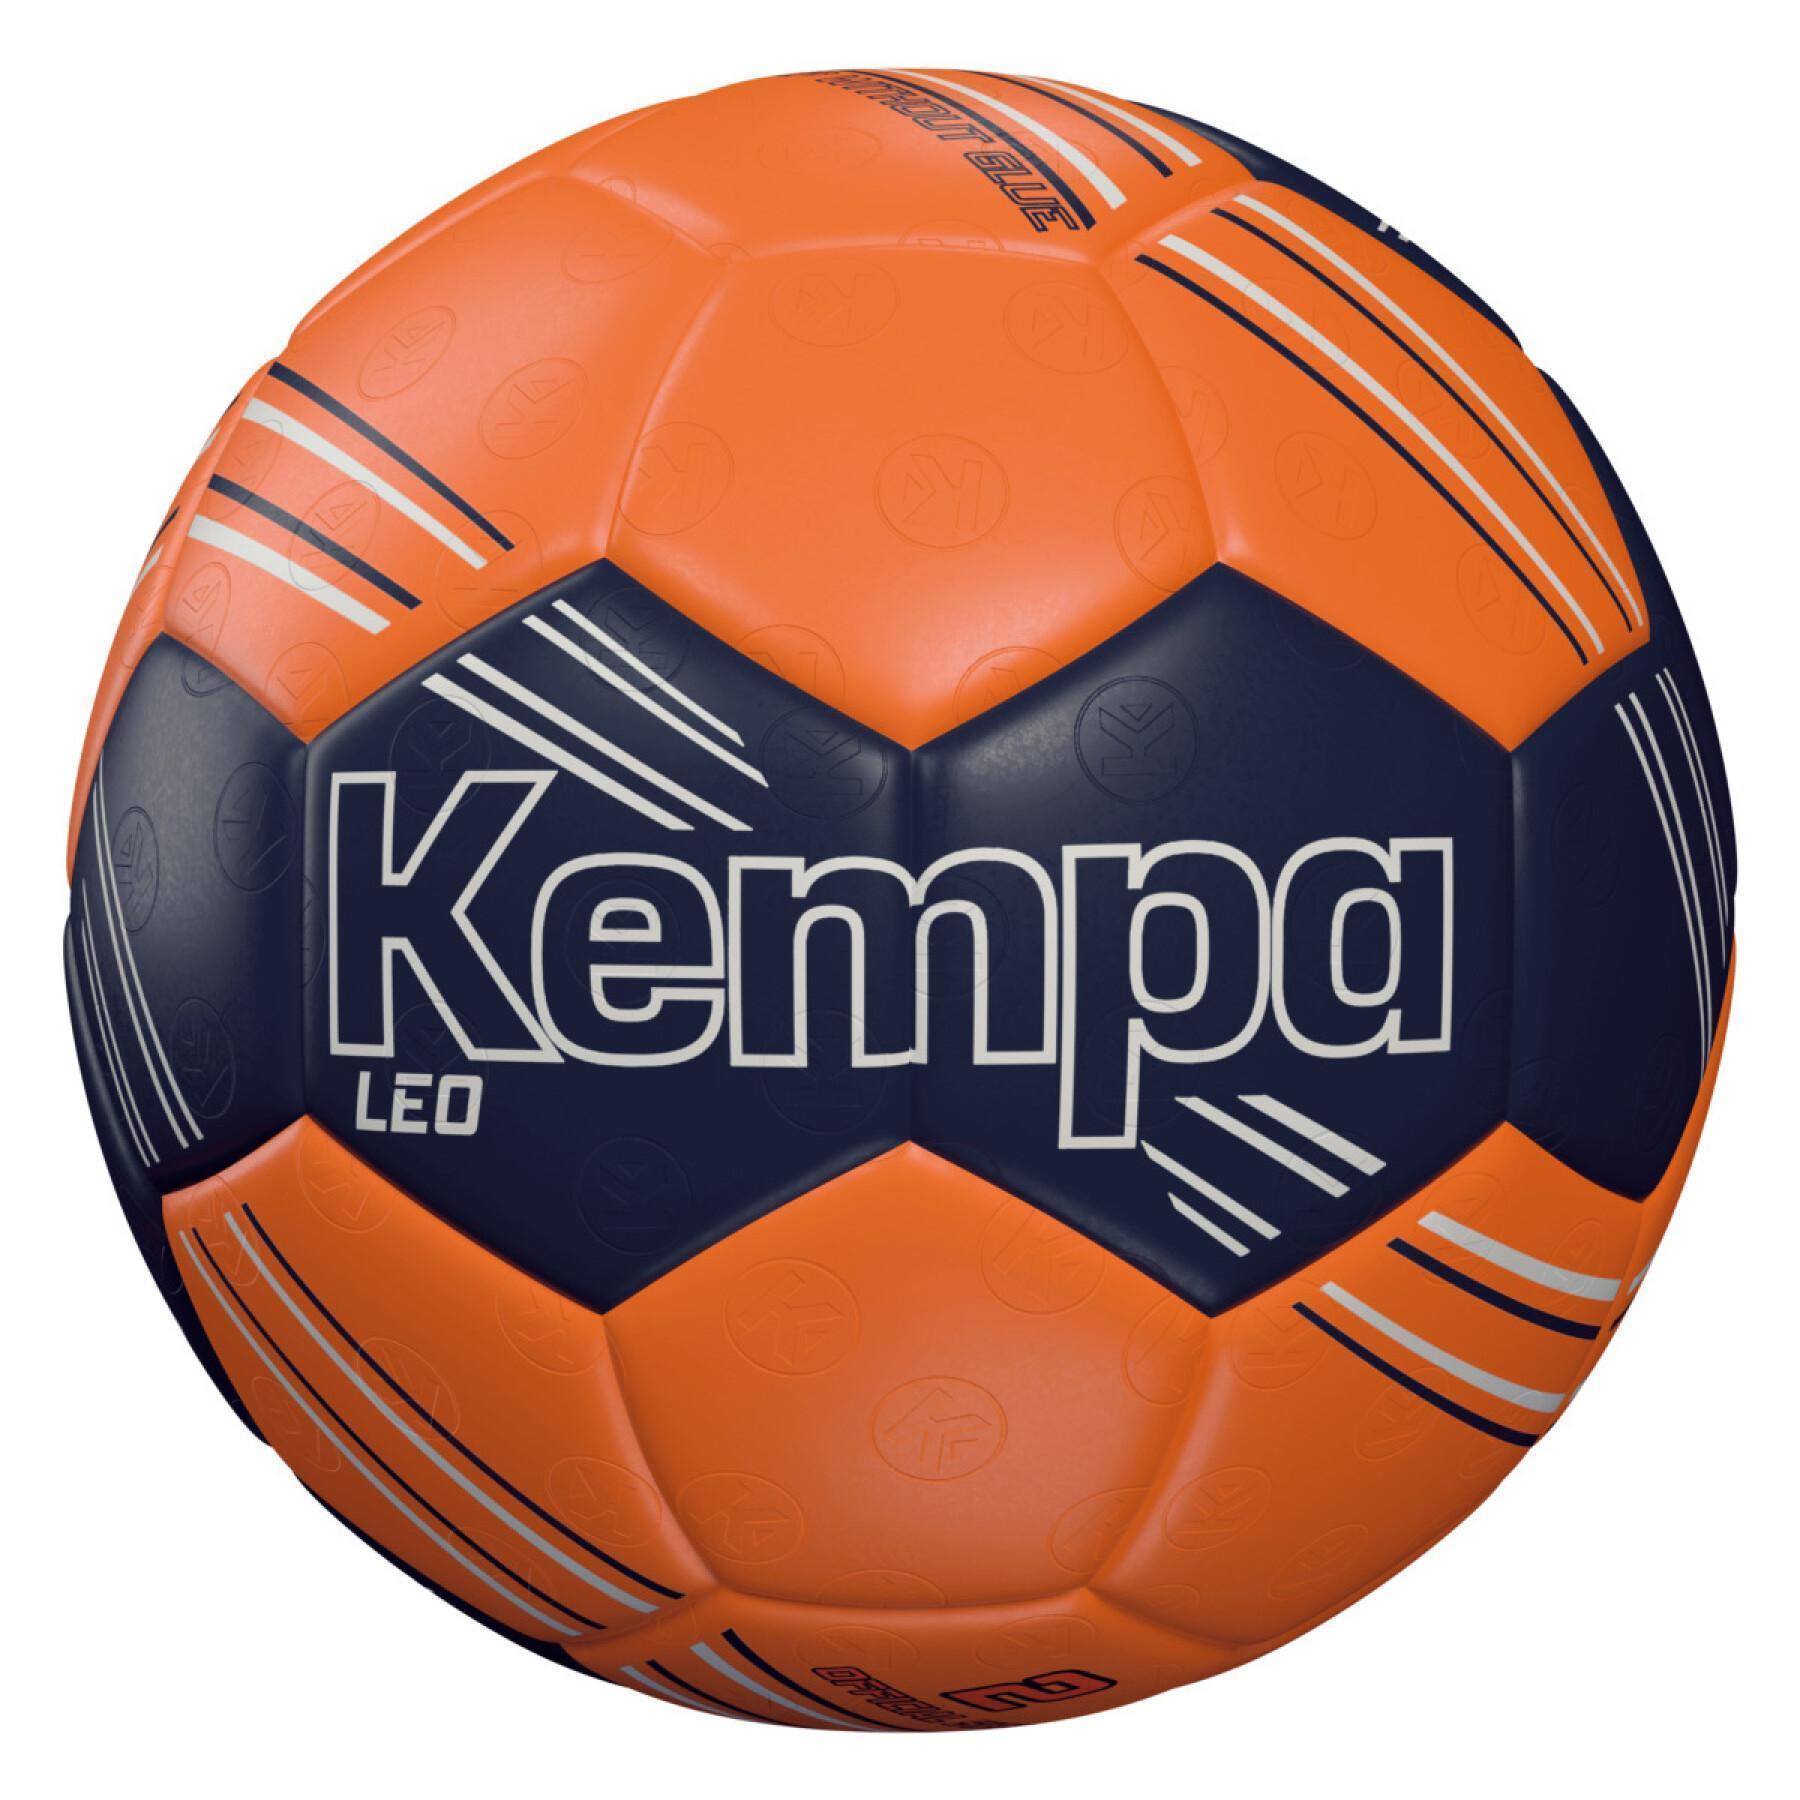 Handball Kempa Leo - Kempa - Brands - Handballs